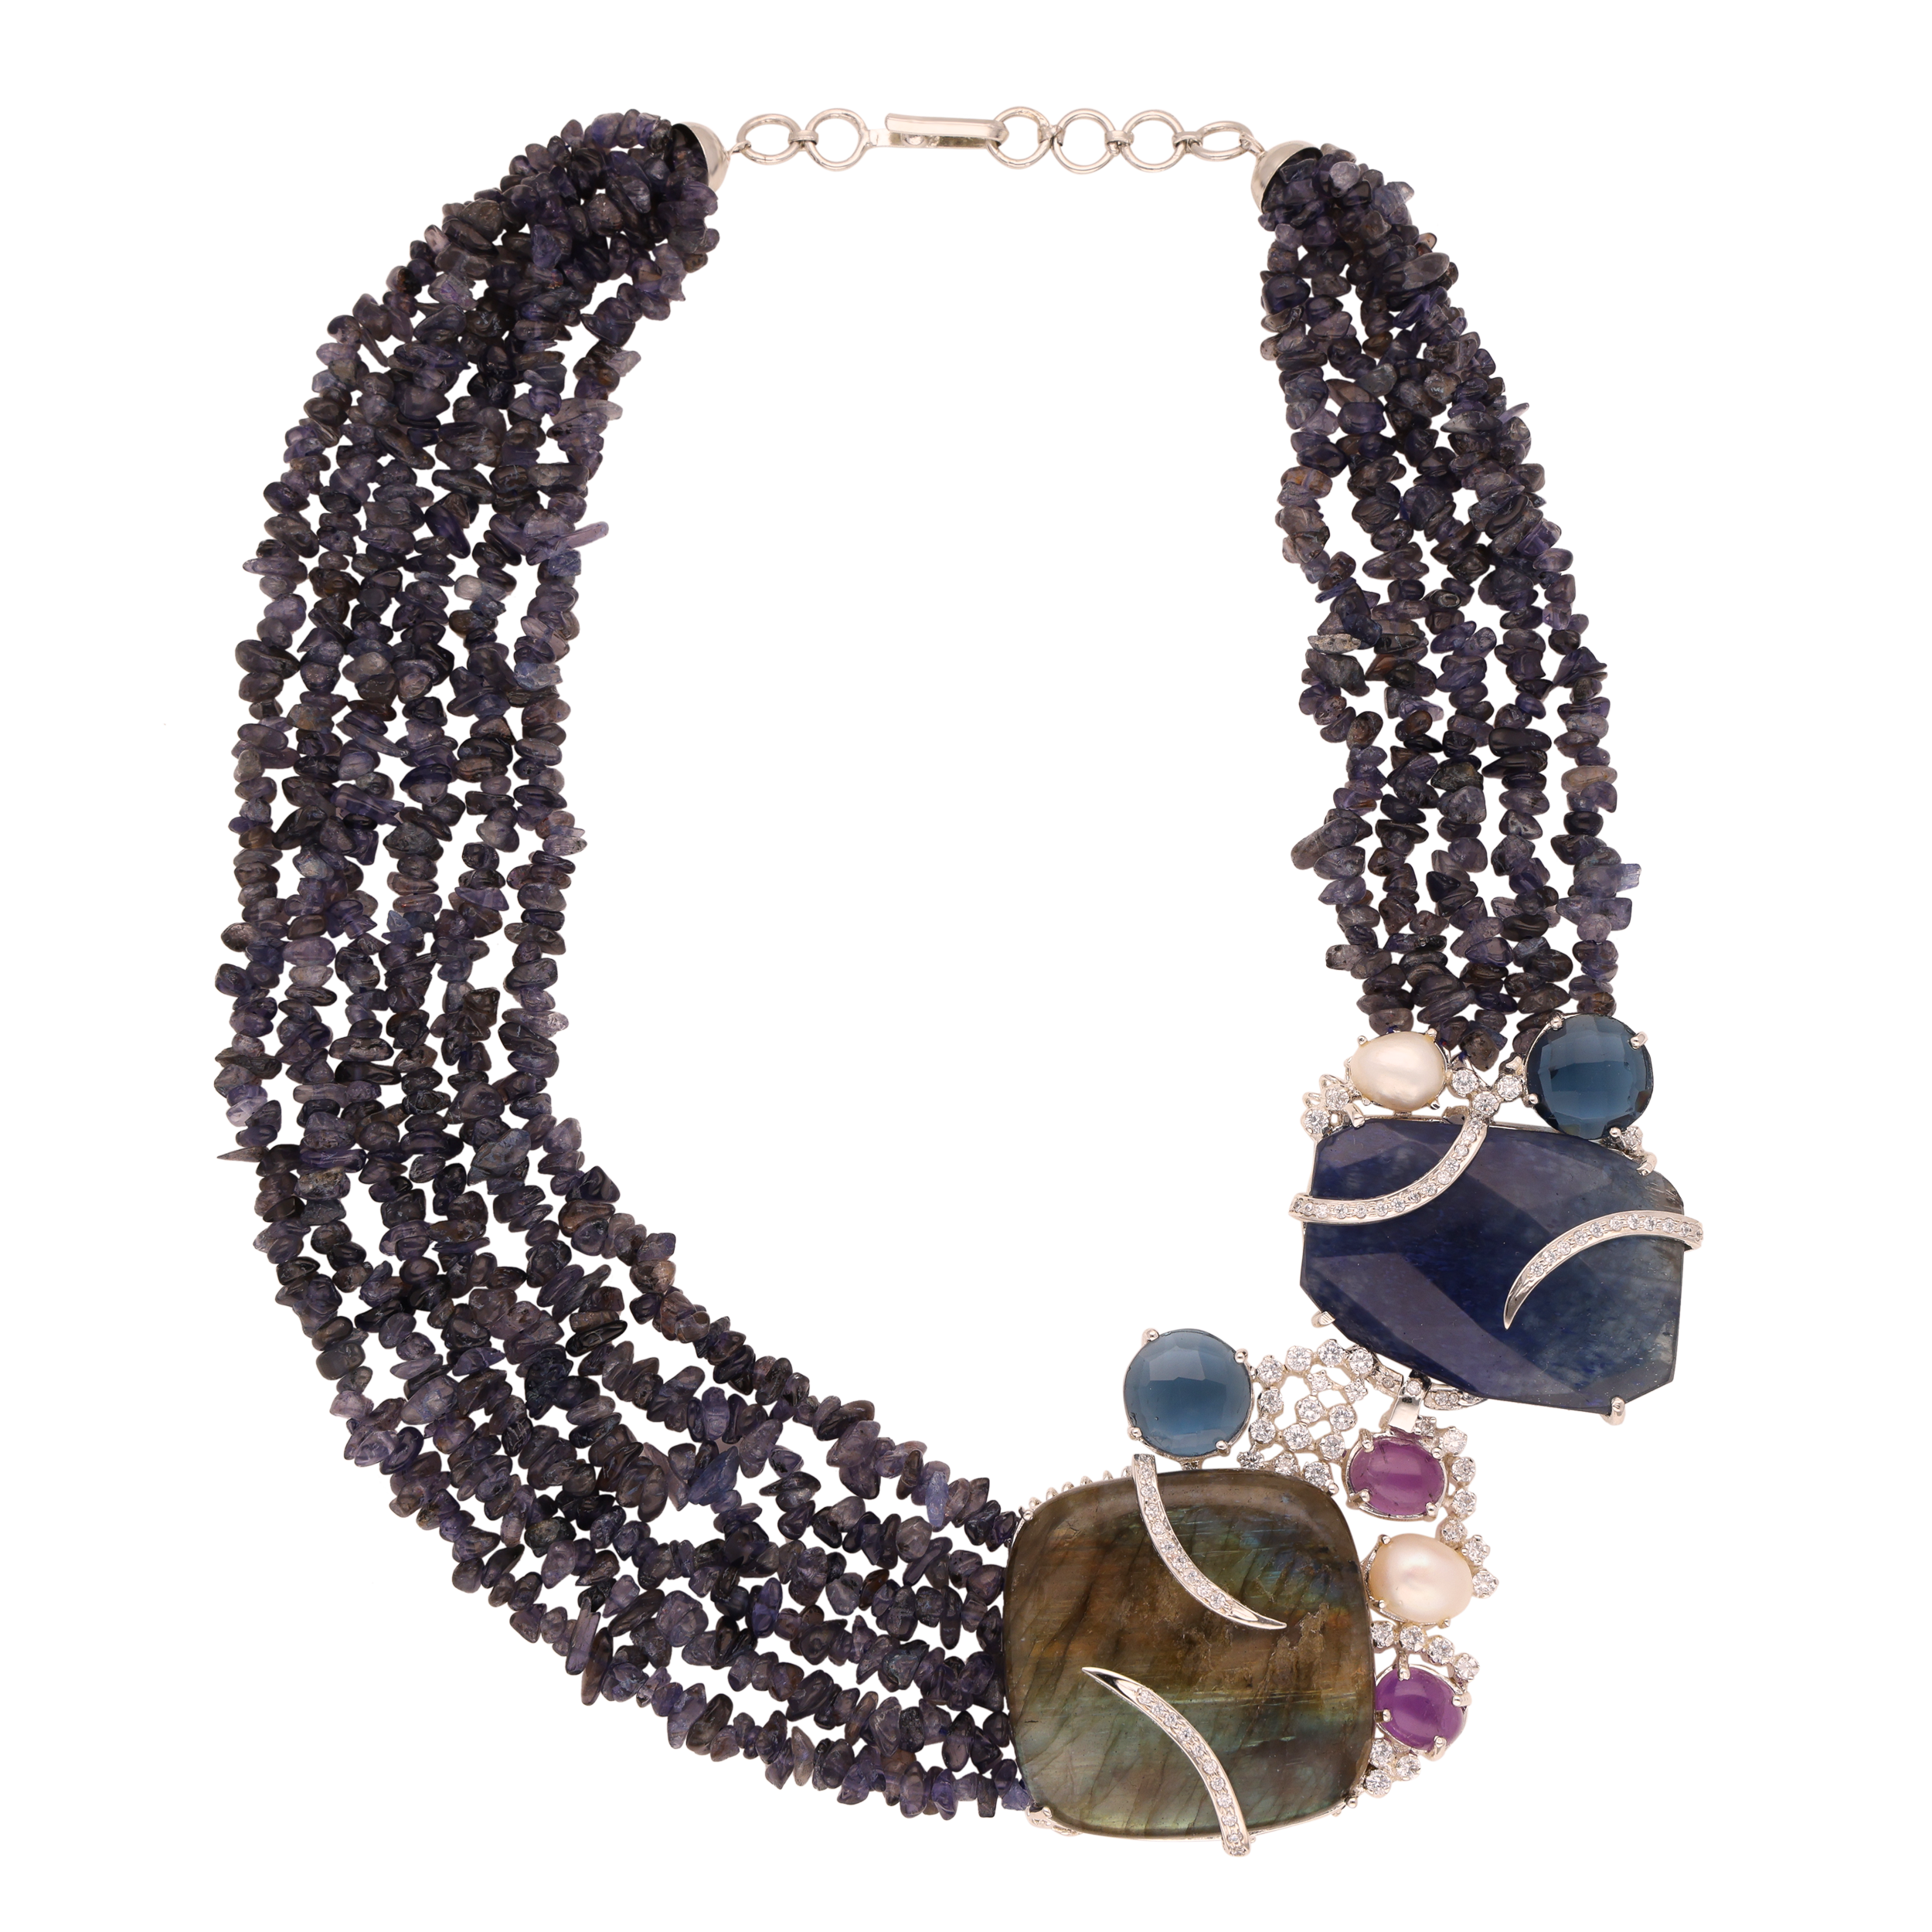 Crystal Cluster Strand Necklace | SKU: 0018794953